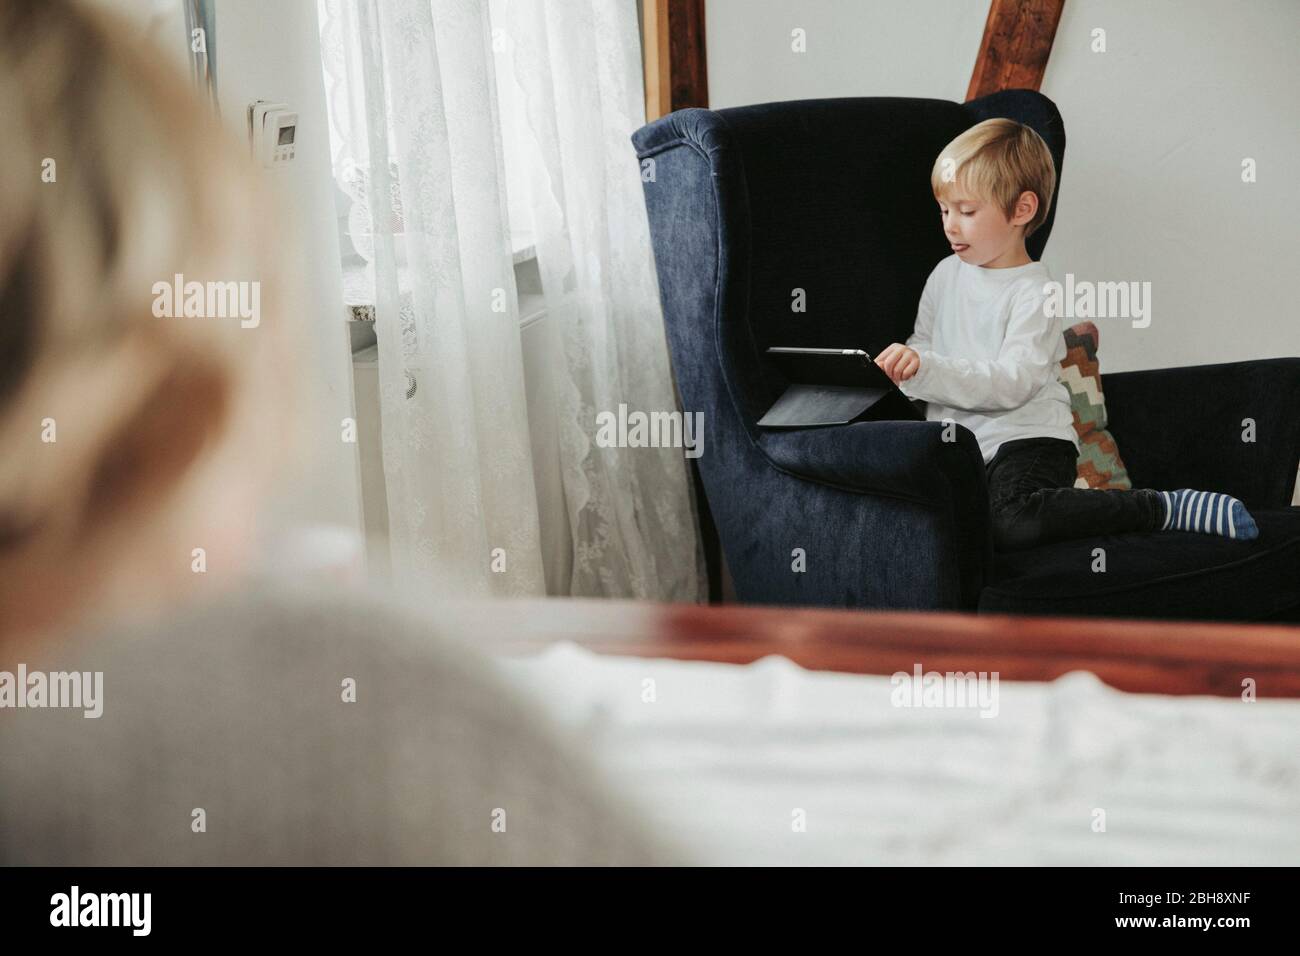 kleiner Junge mit Tablet Computer im Sessel, Mutter unscharf im Vordergrund Stock Photo